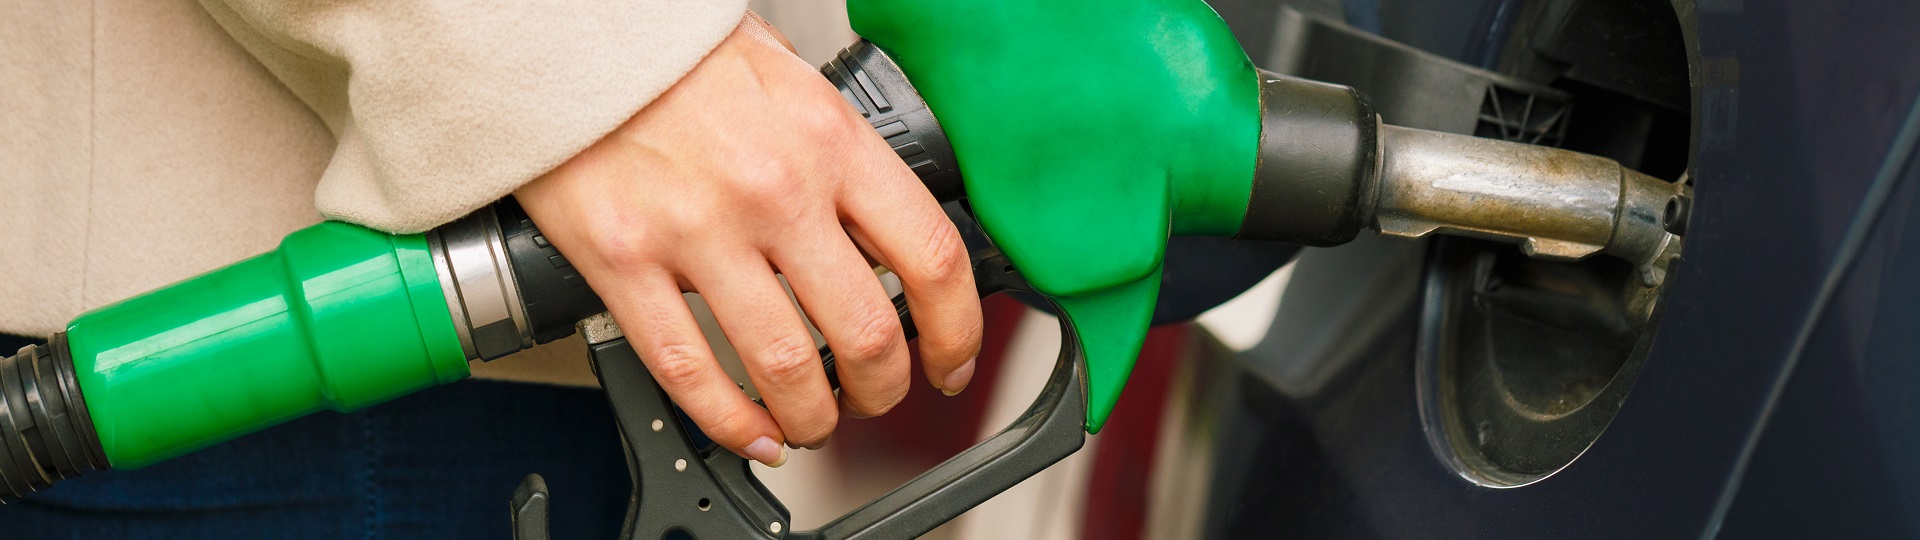 Prudké snižování cen benzínu a nafty pokračuje